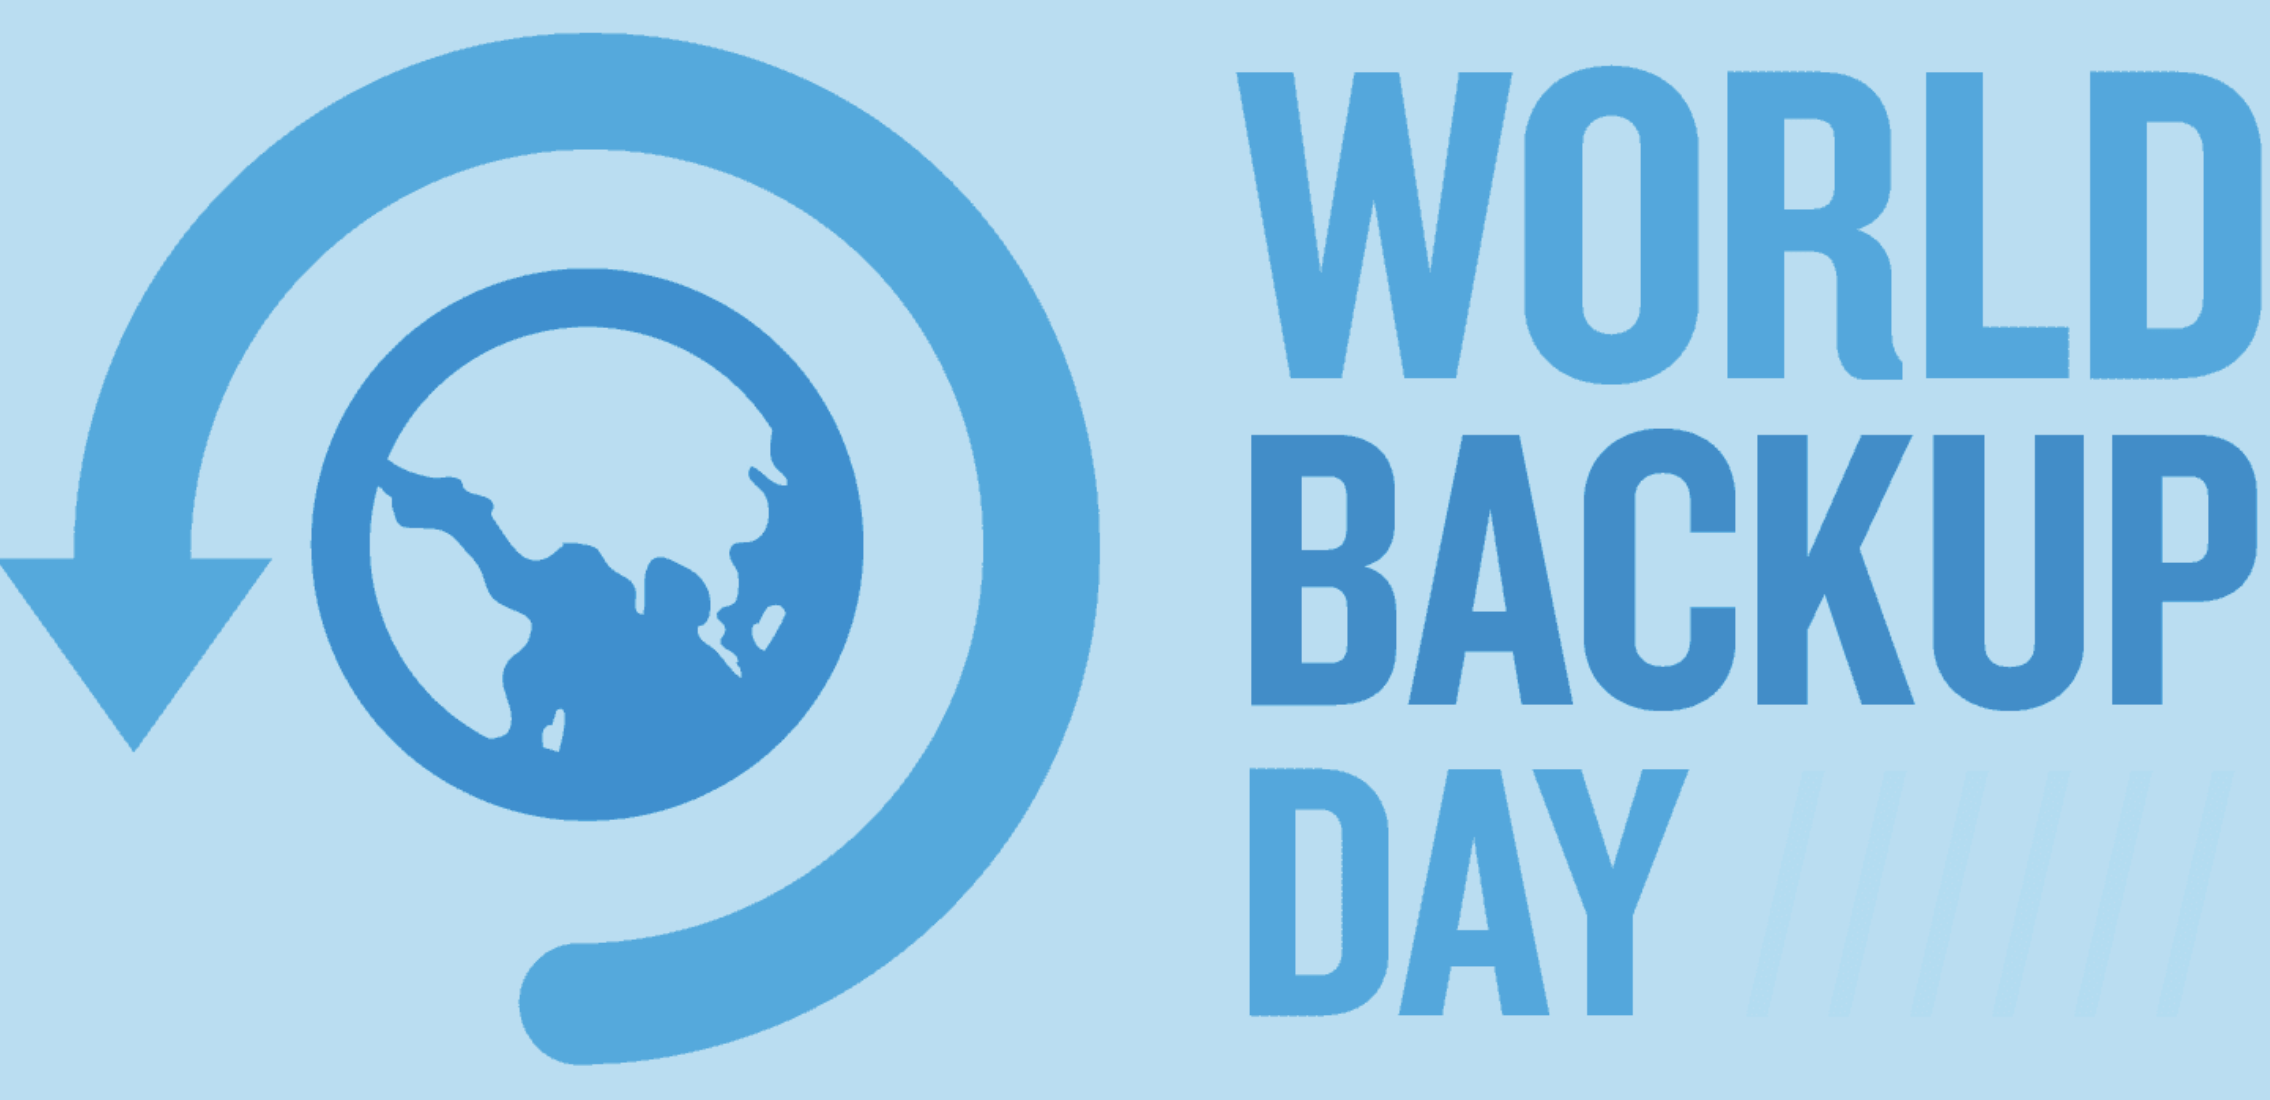 El Día Mundial del Backup existe desde 2011. Lo creó el consultor Ismail Jadun, que por entonces era un estudiante.